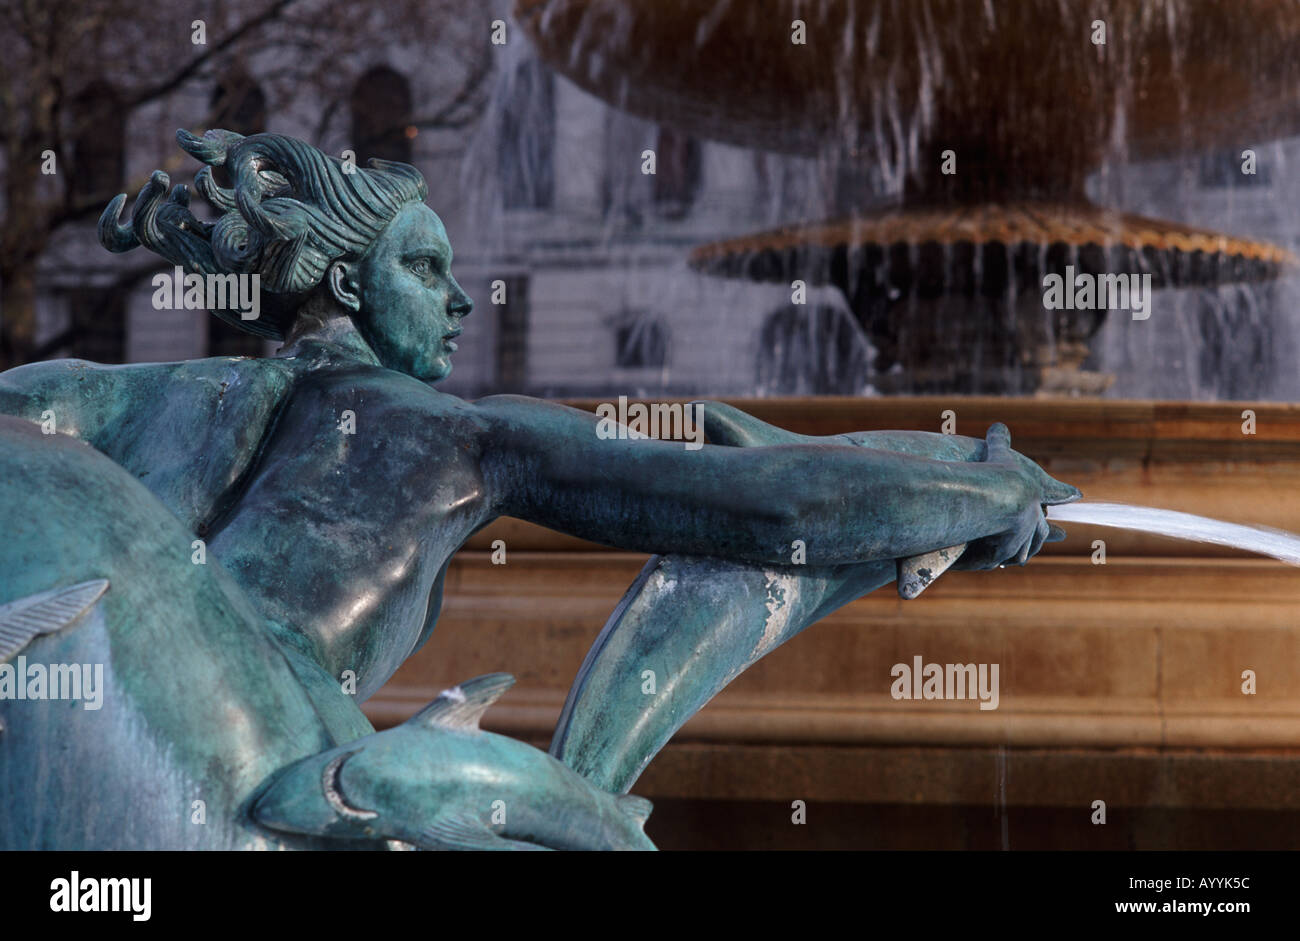 Statue de sirène avec dauphin (sculpteur : W McMillan) pulvériser de l'eau Fontaine à Trafalgar Square, Londres, Angleterre Banque D'Images